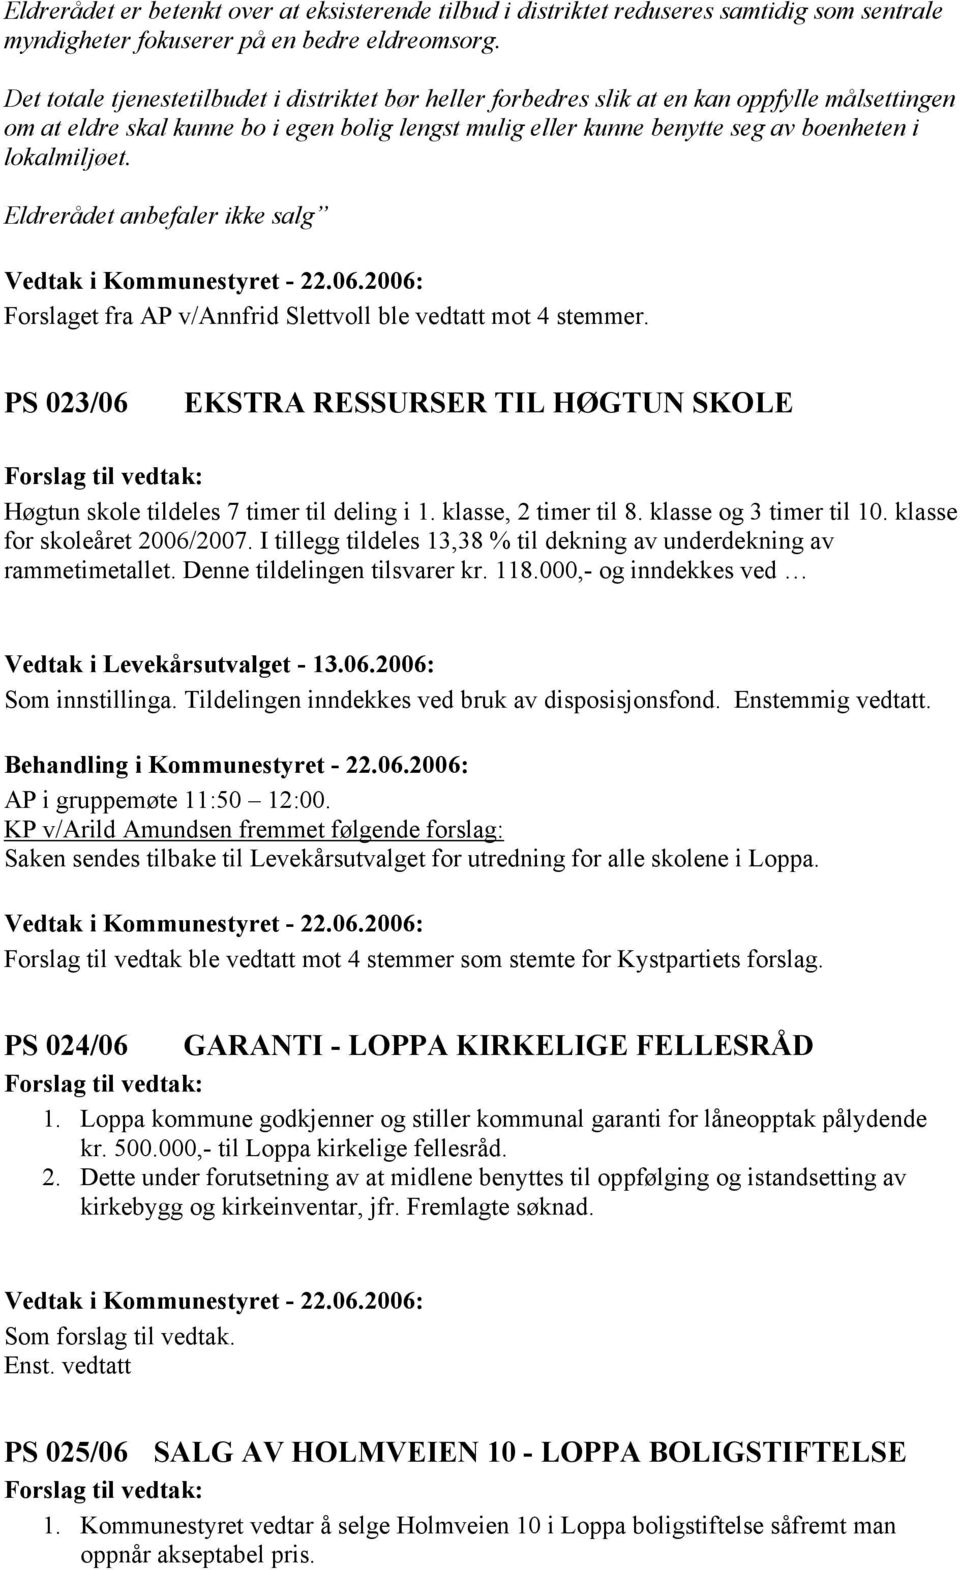 lokalmiljøet. Eldrerådet anbefaler ikke salg Forslaget fra AP v/annfrid Slettvoll ble vedtatt mot 4 stemmer. PS 023/06 EKSTRA RESSURSER TIL HØGTUN SKOLE Høgtun skole tildeles 7 timer til deling i 1.